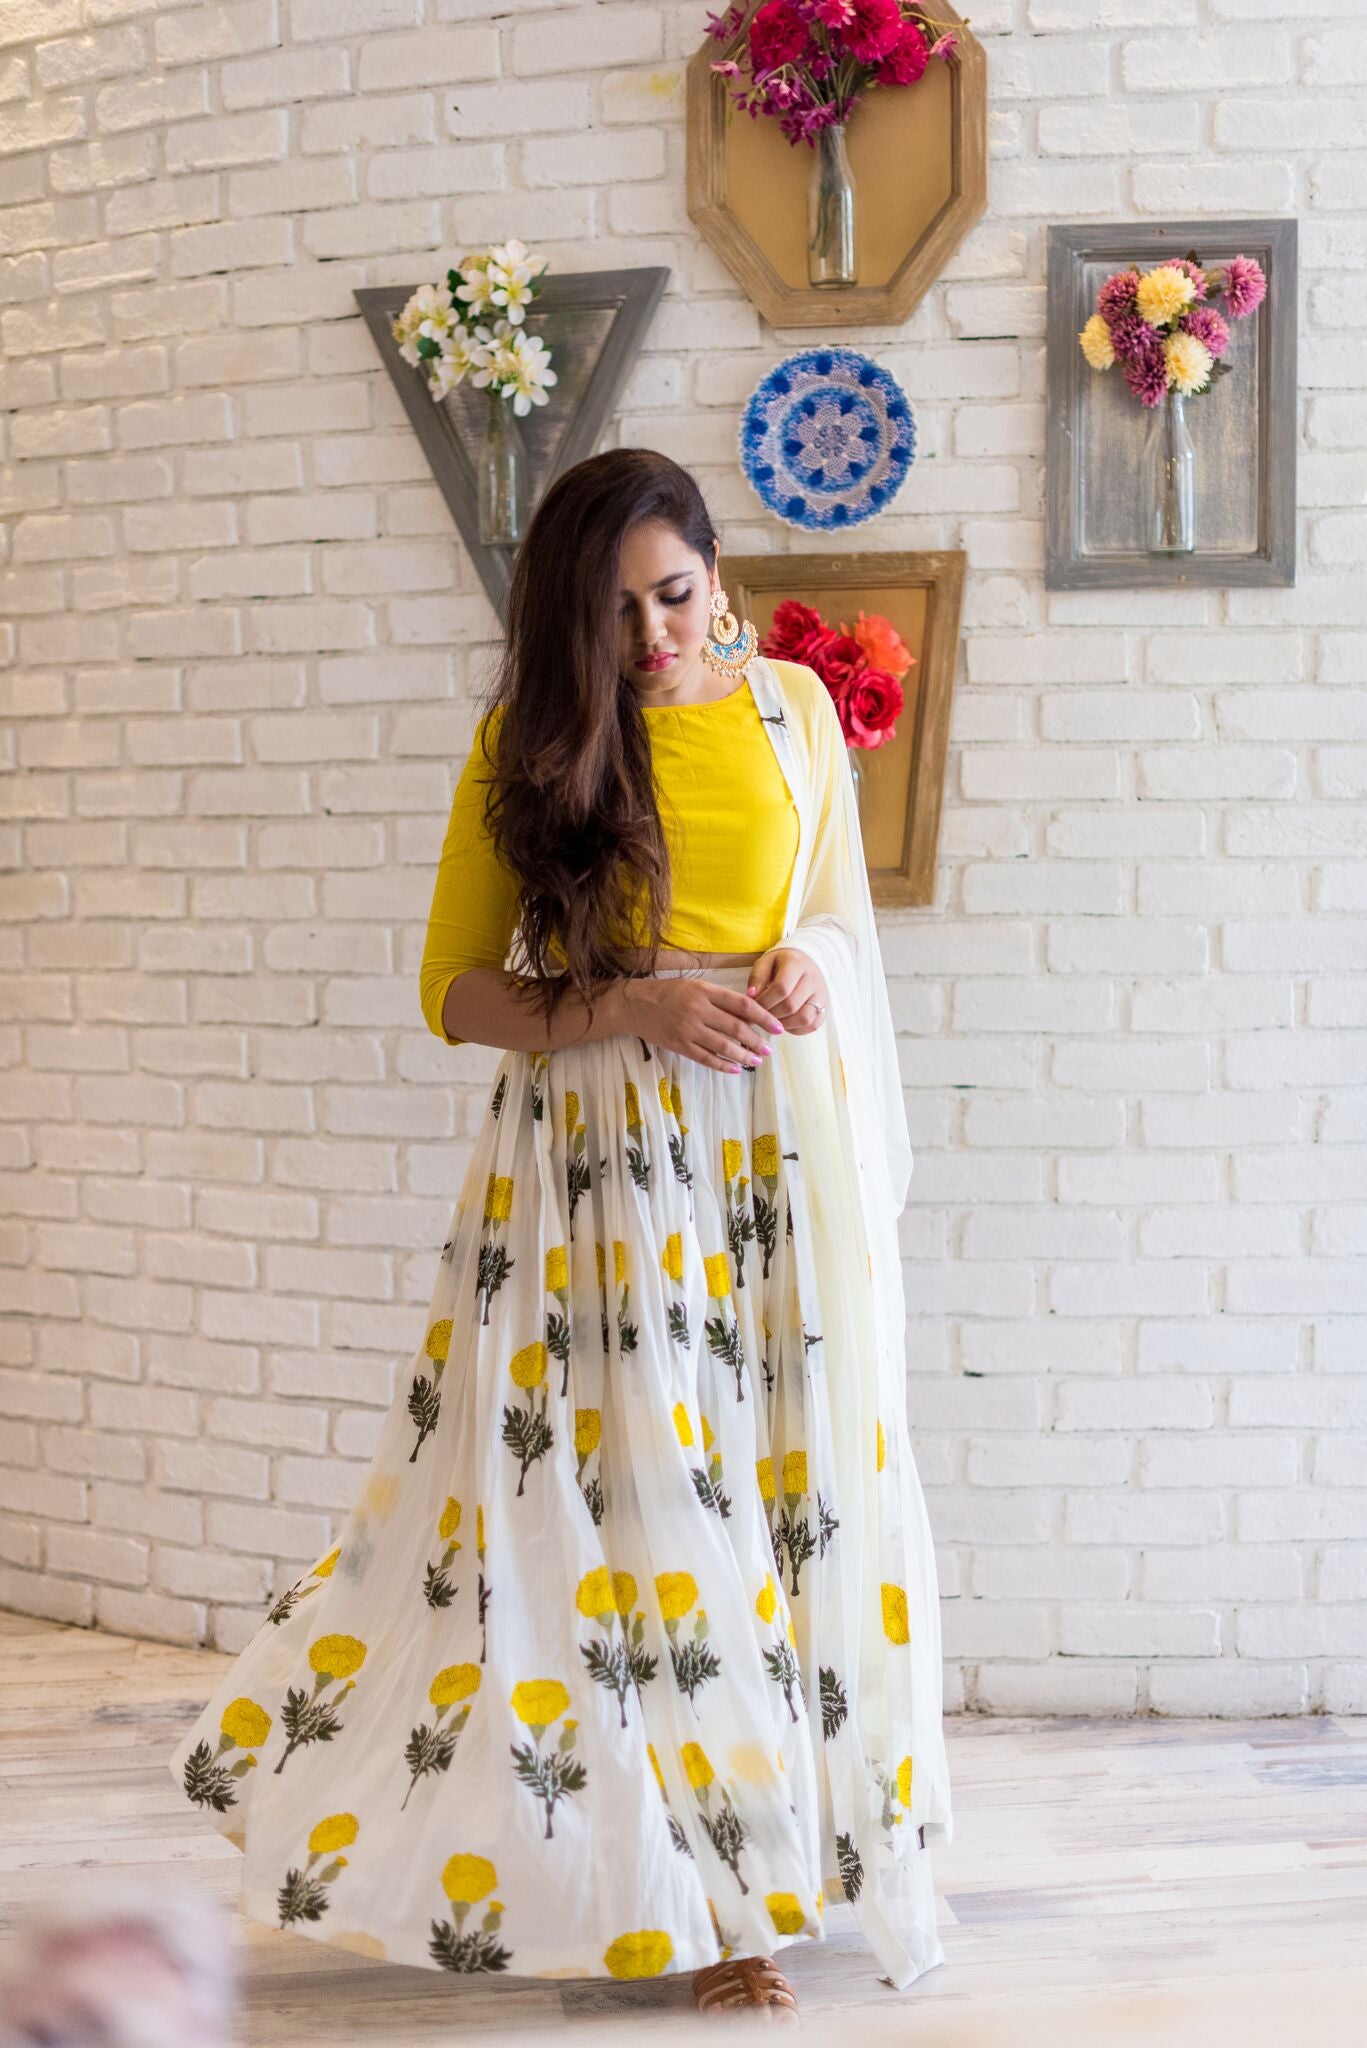 Kiara Advani White Fashionable Crop Top Lehenga For Haldi - Ethnic Race